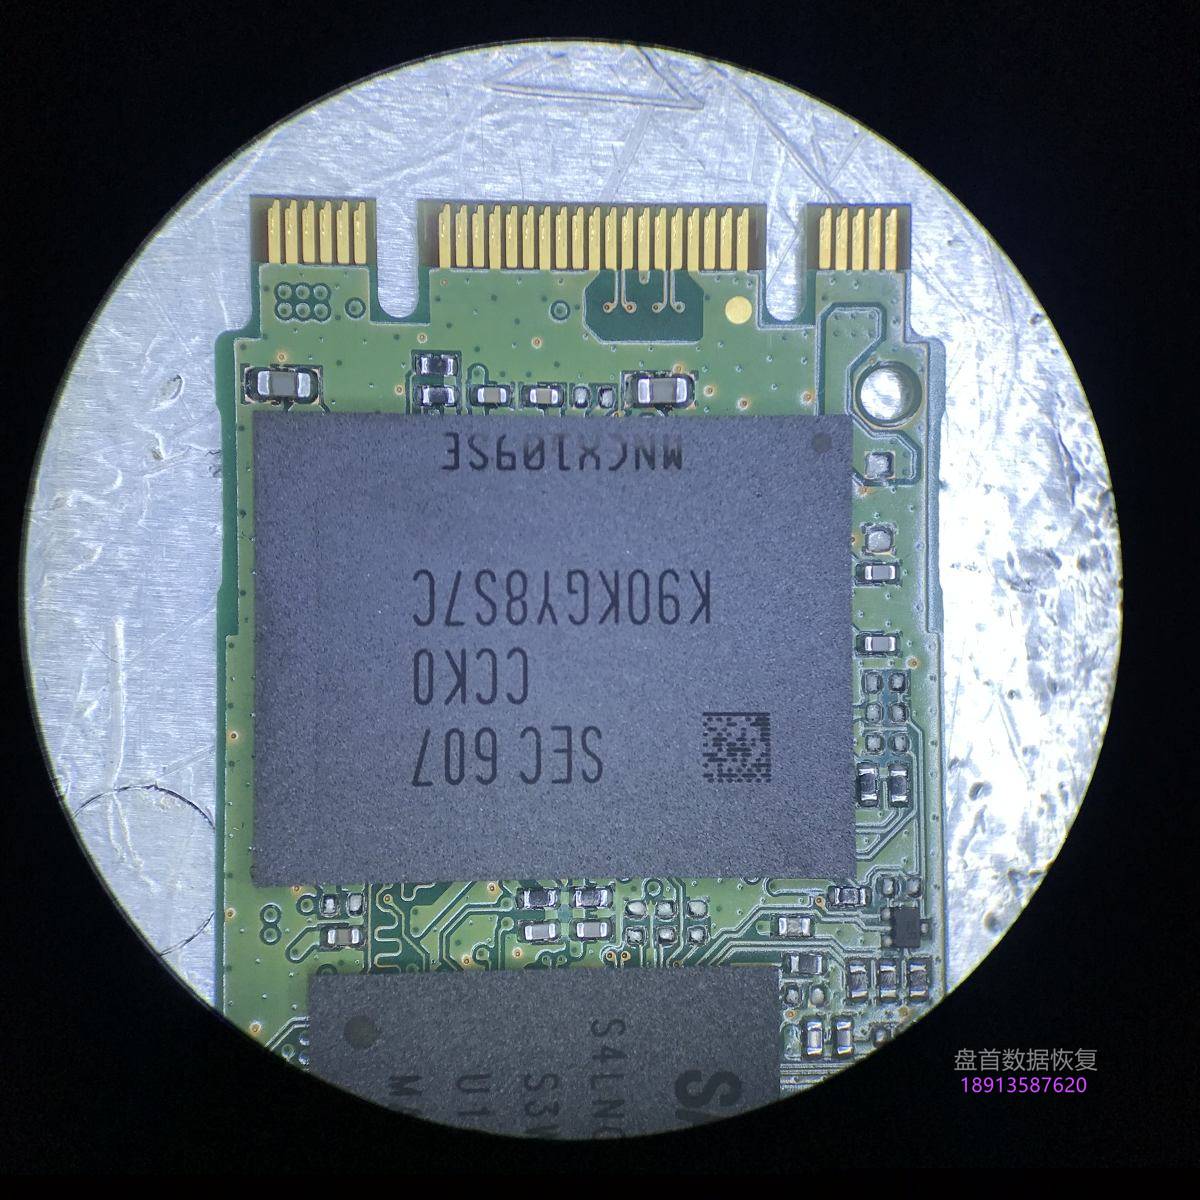 三星PM871 MZNLN256HCHP-000H1 SSD无法识别BitLocker分区加密数据恢复成功